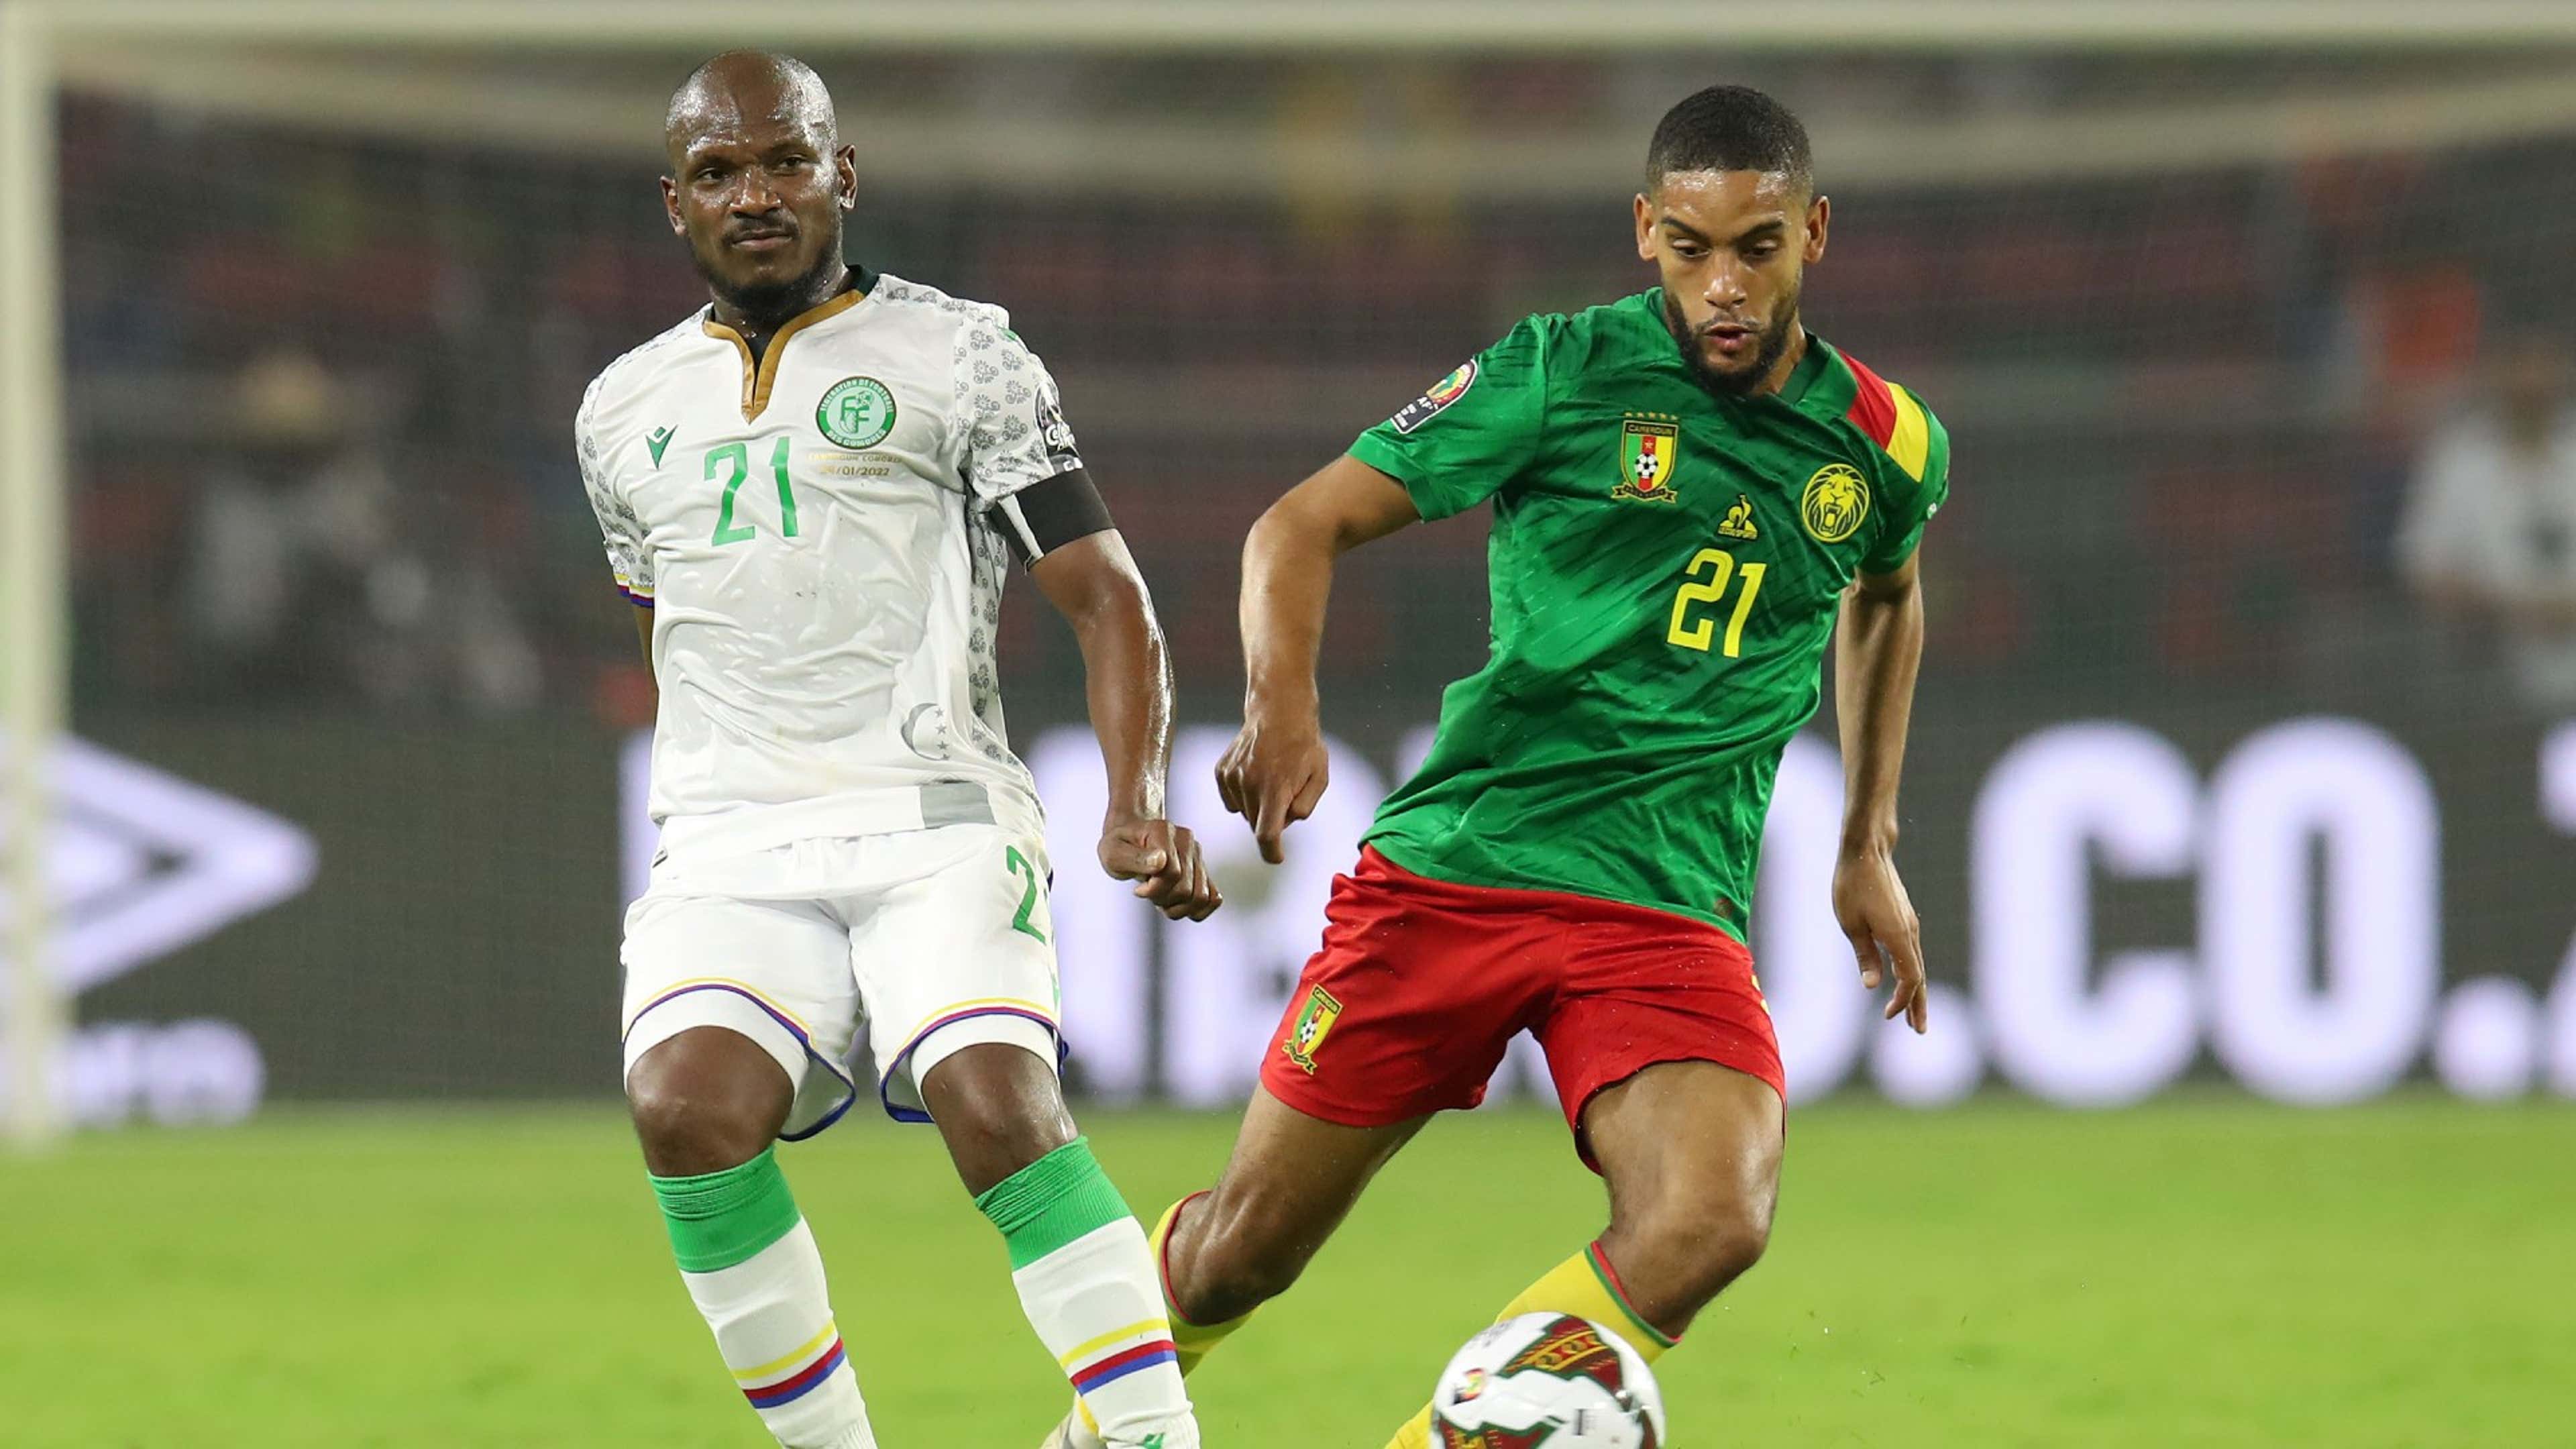 El Fardou Ben challenged by Jean Castelletto, Cameroon vs Comoros